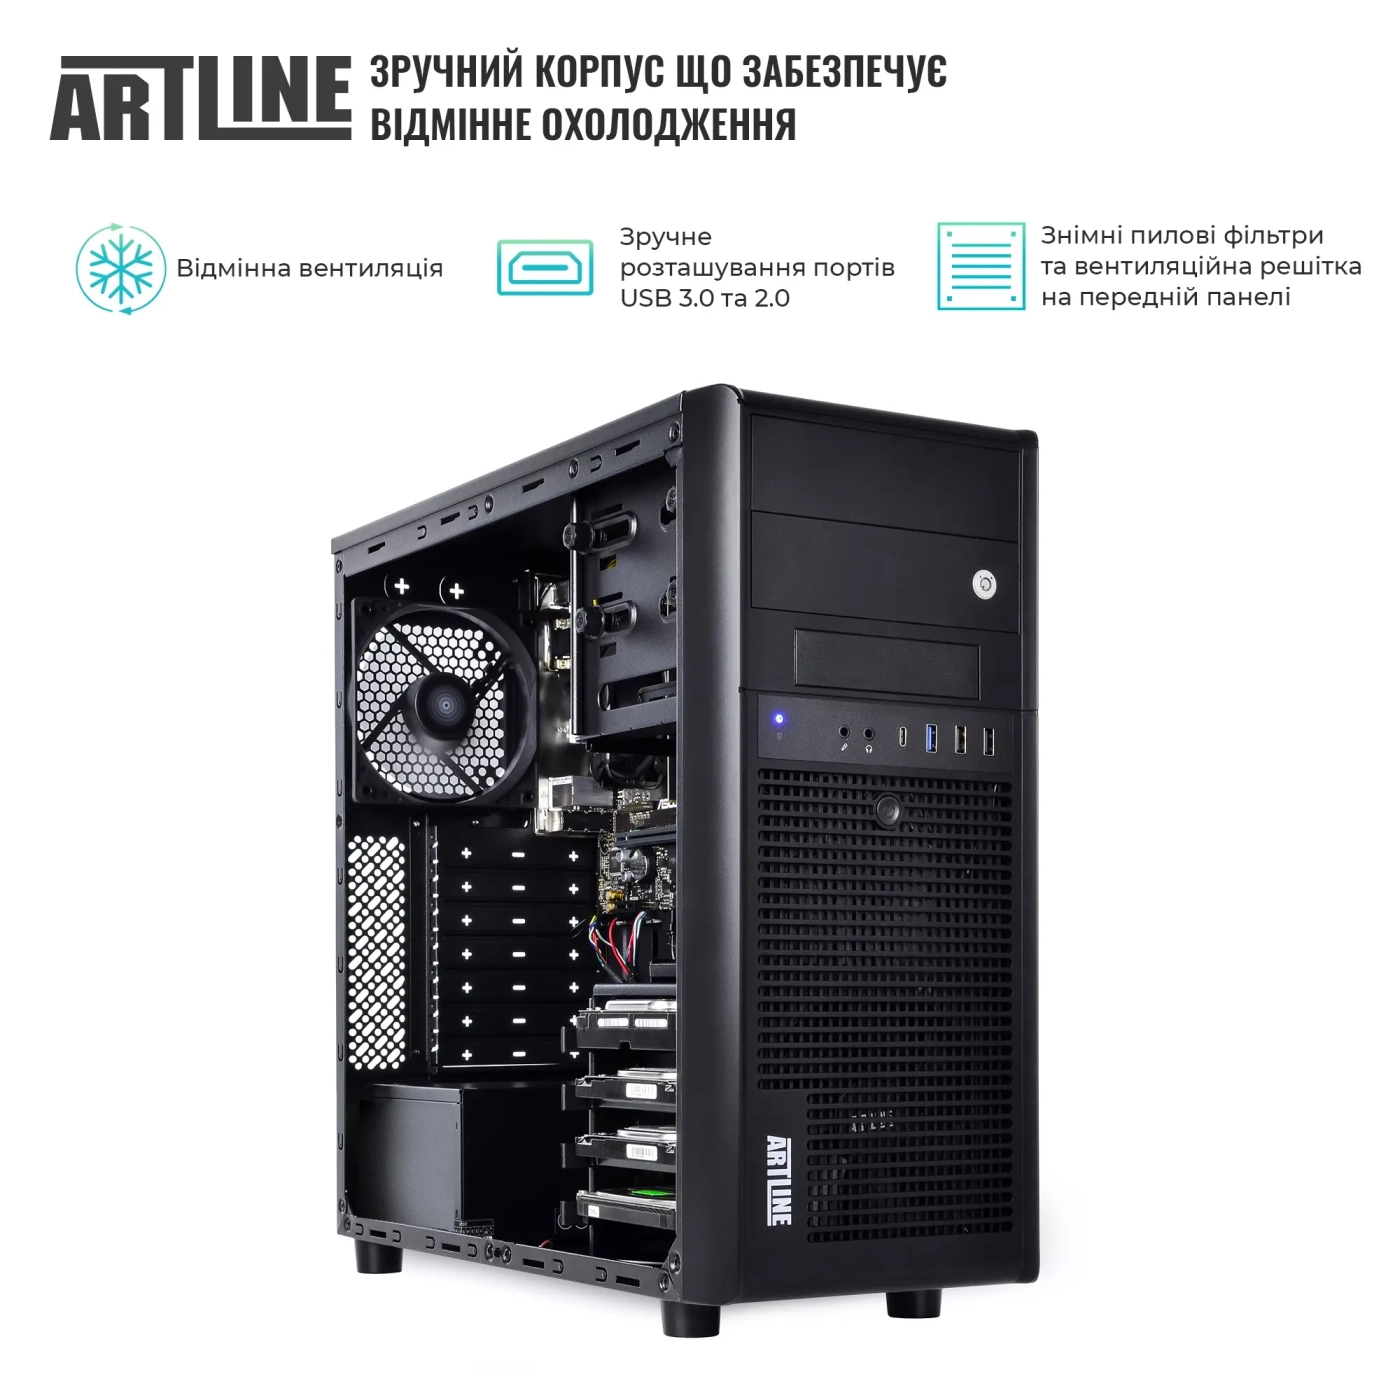 Купить Сервер ARTLINE Business T38 (T38v36) - фото 3